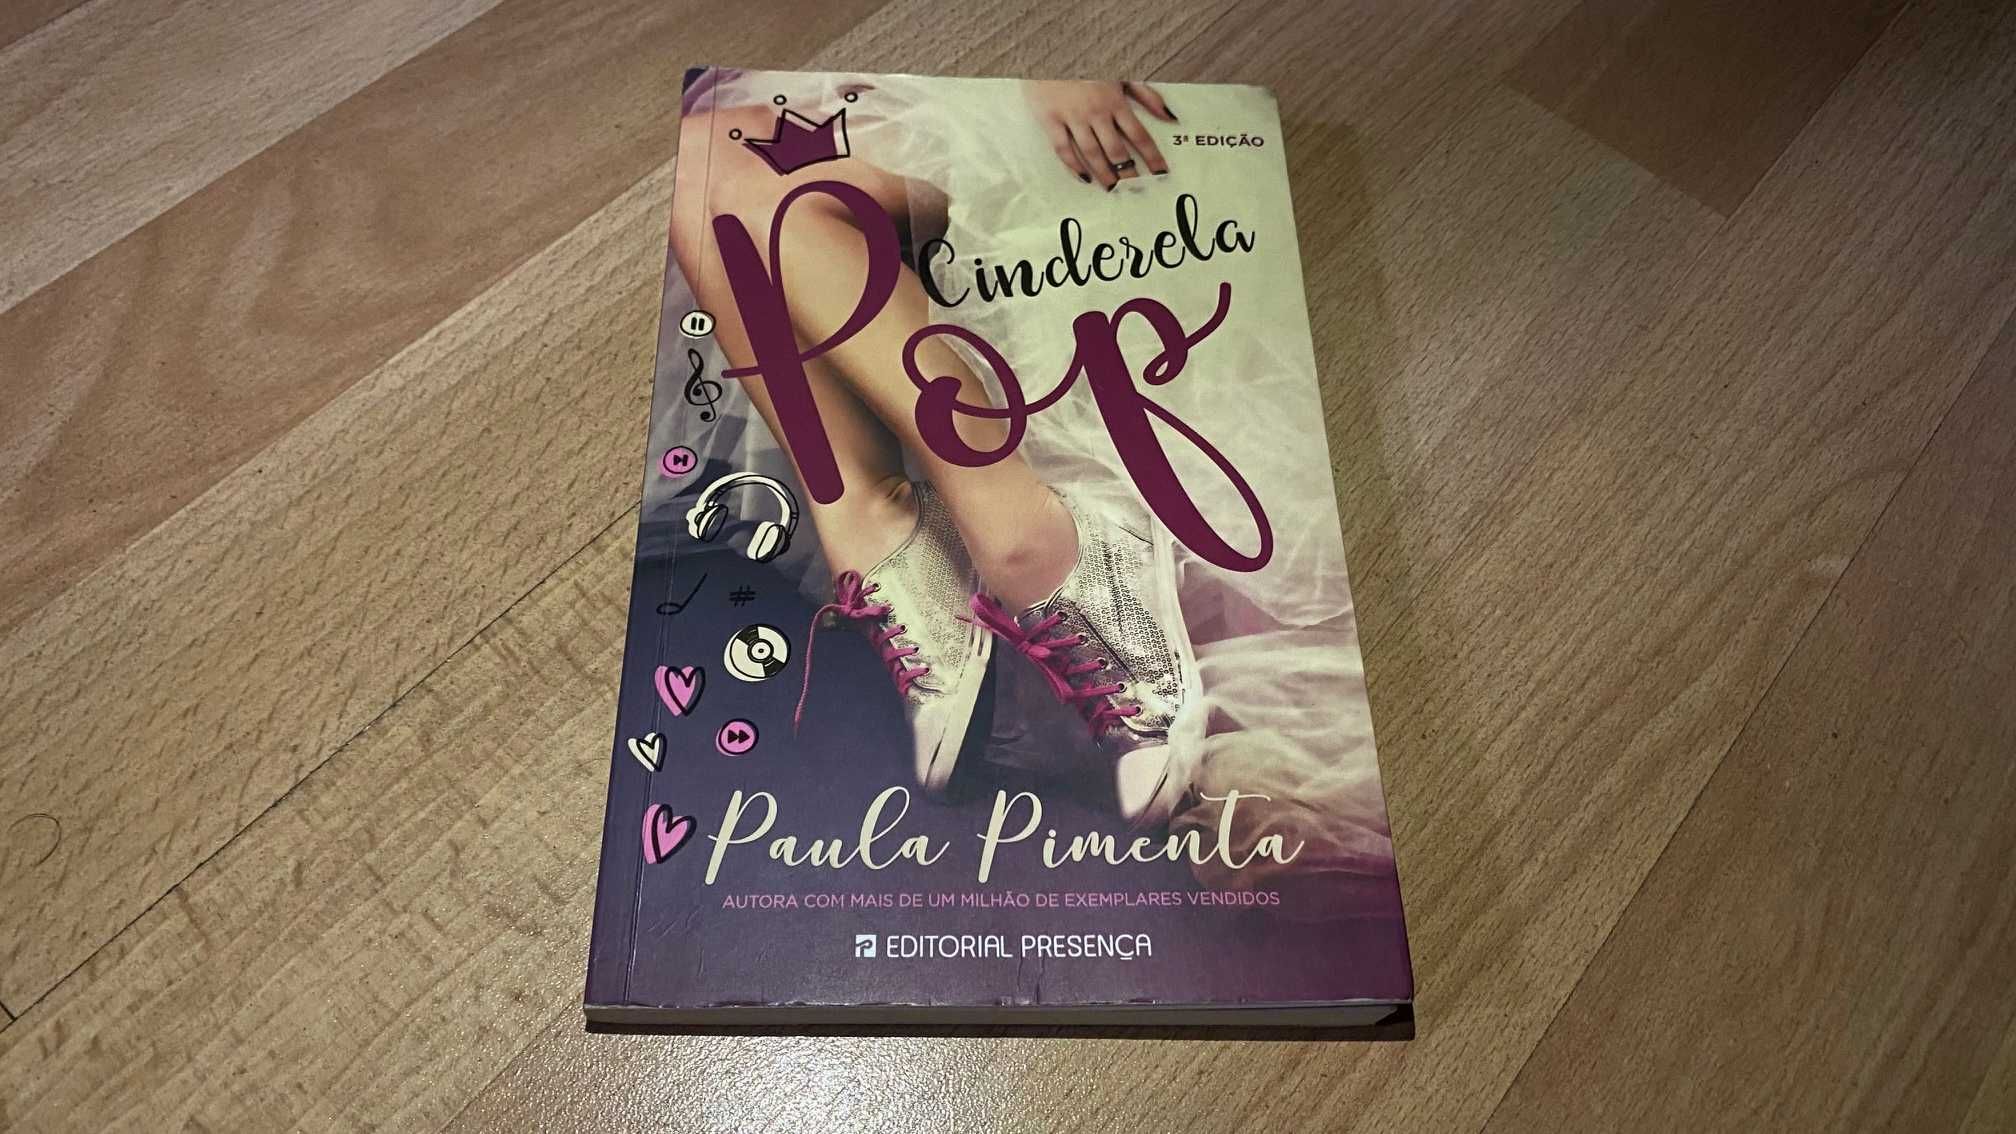 Livros Paula Pimenta - Coleção Princesa e outro. 5€ cada um.